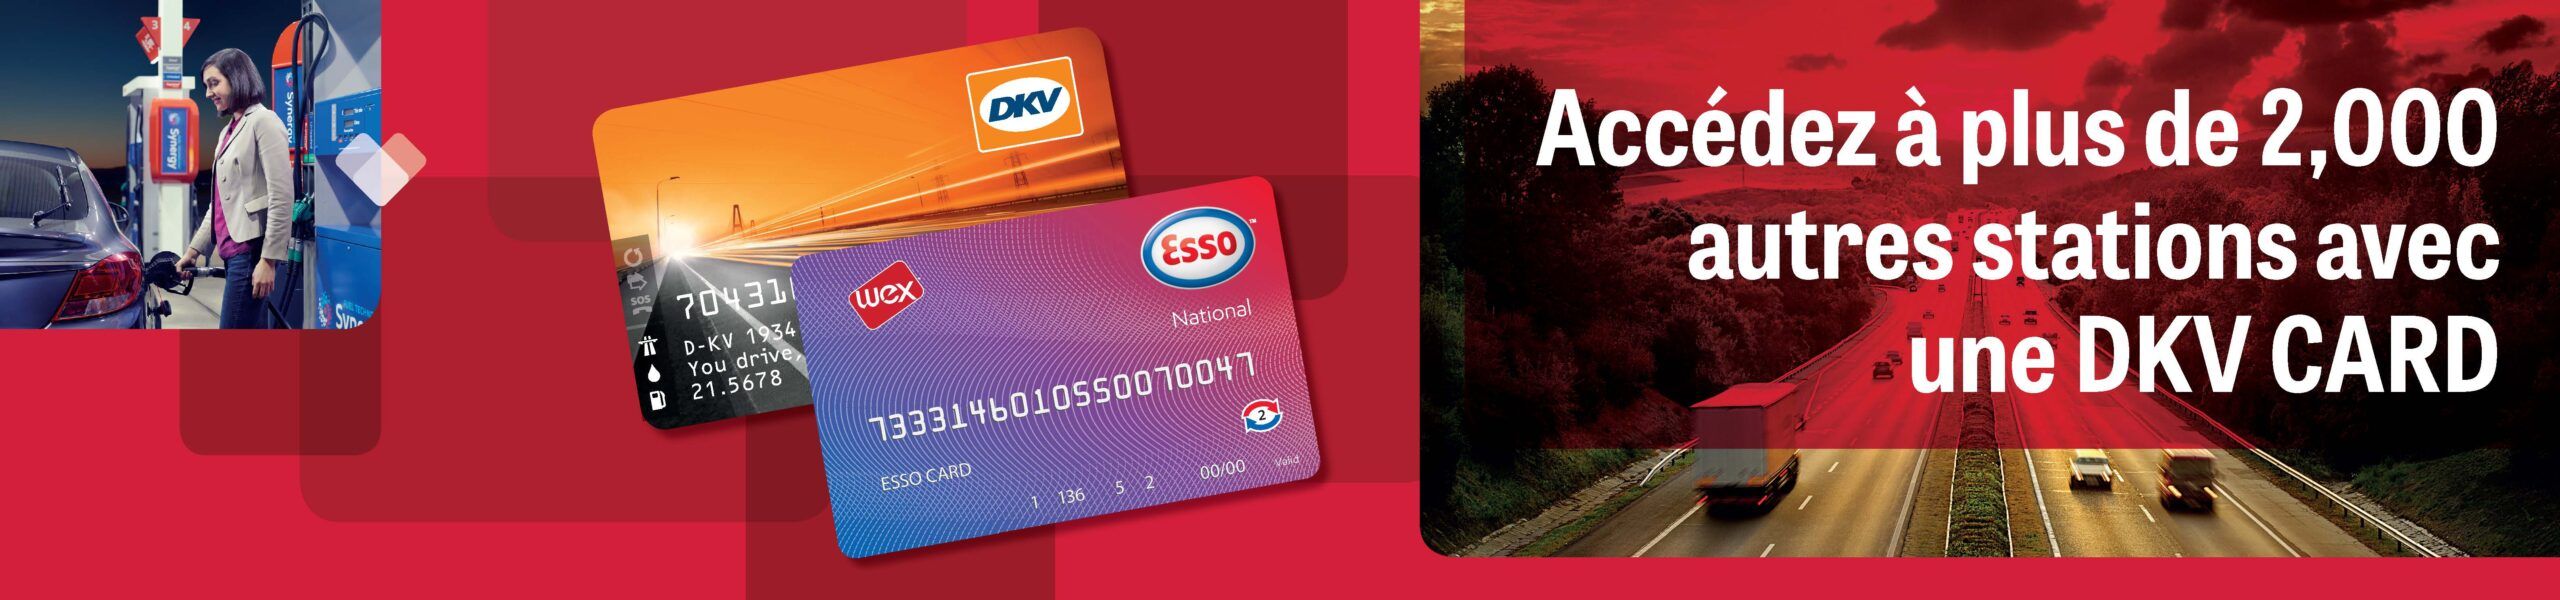 ESSO card et DKV